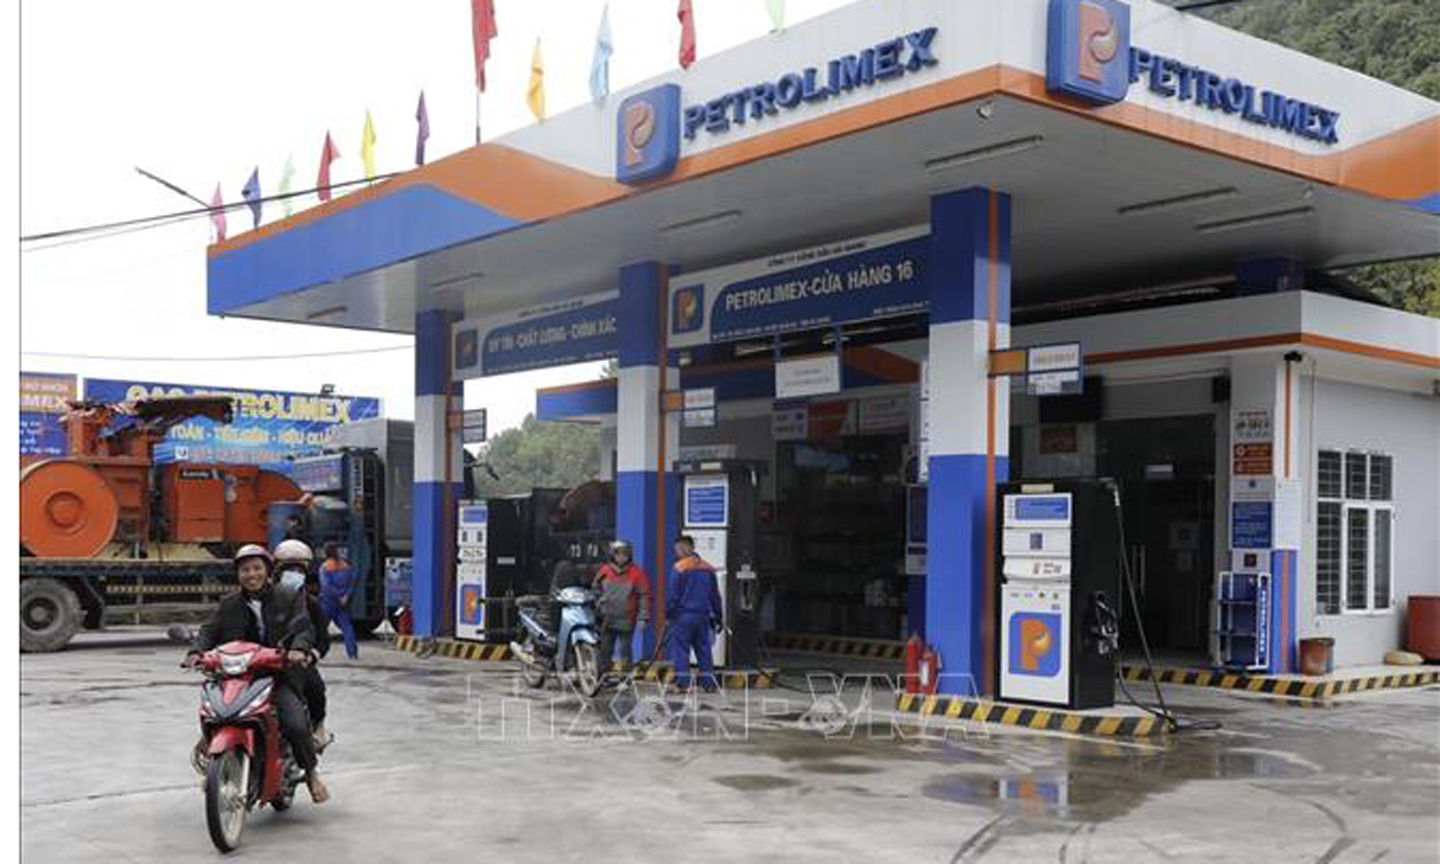 Mua bán xăng, dầu tại một cửa hàng kinh doanh xăng dầu của Petrolimex ở thị trấn Tam Sơn, huyện Quản Bạ, tỉnh Hà Giang. Ảnh: Trần Việt/TTXVN